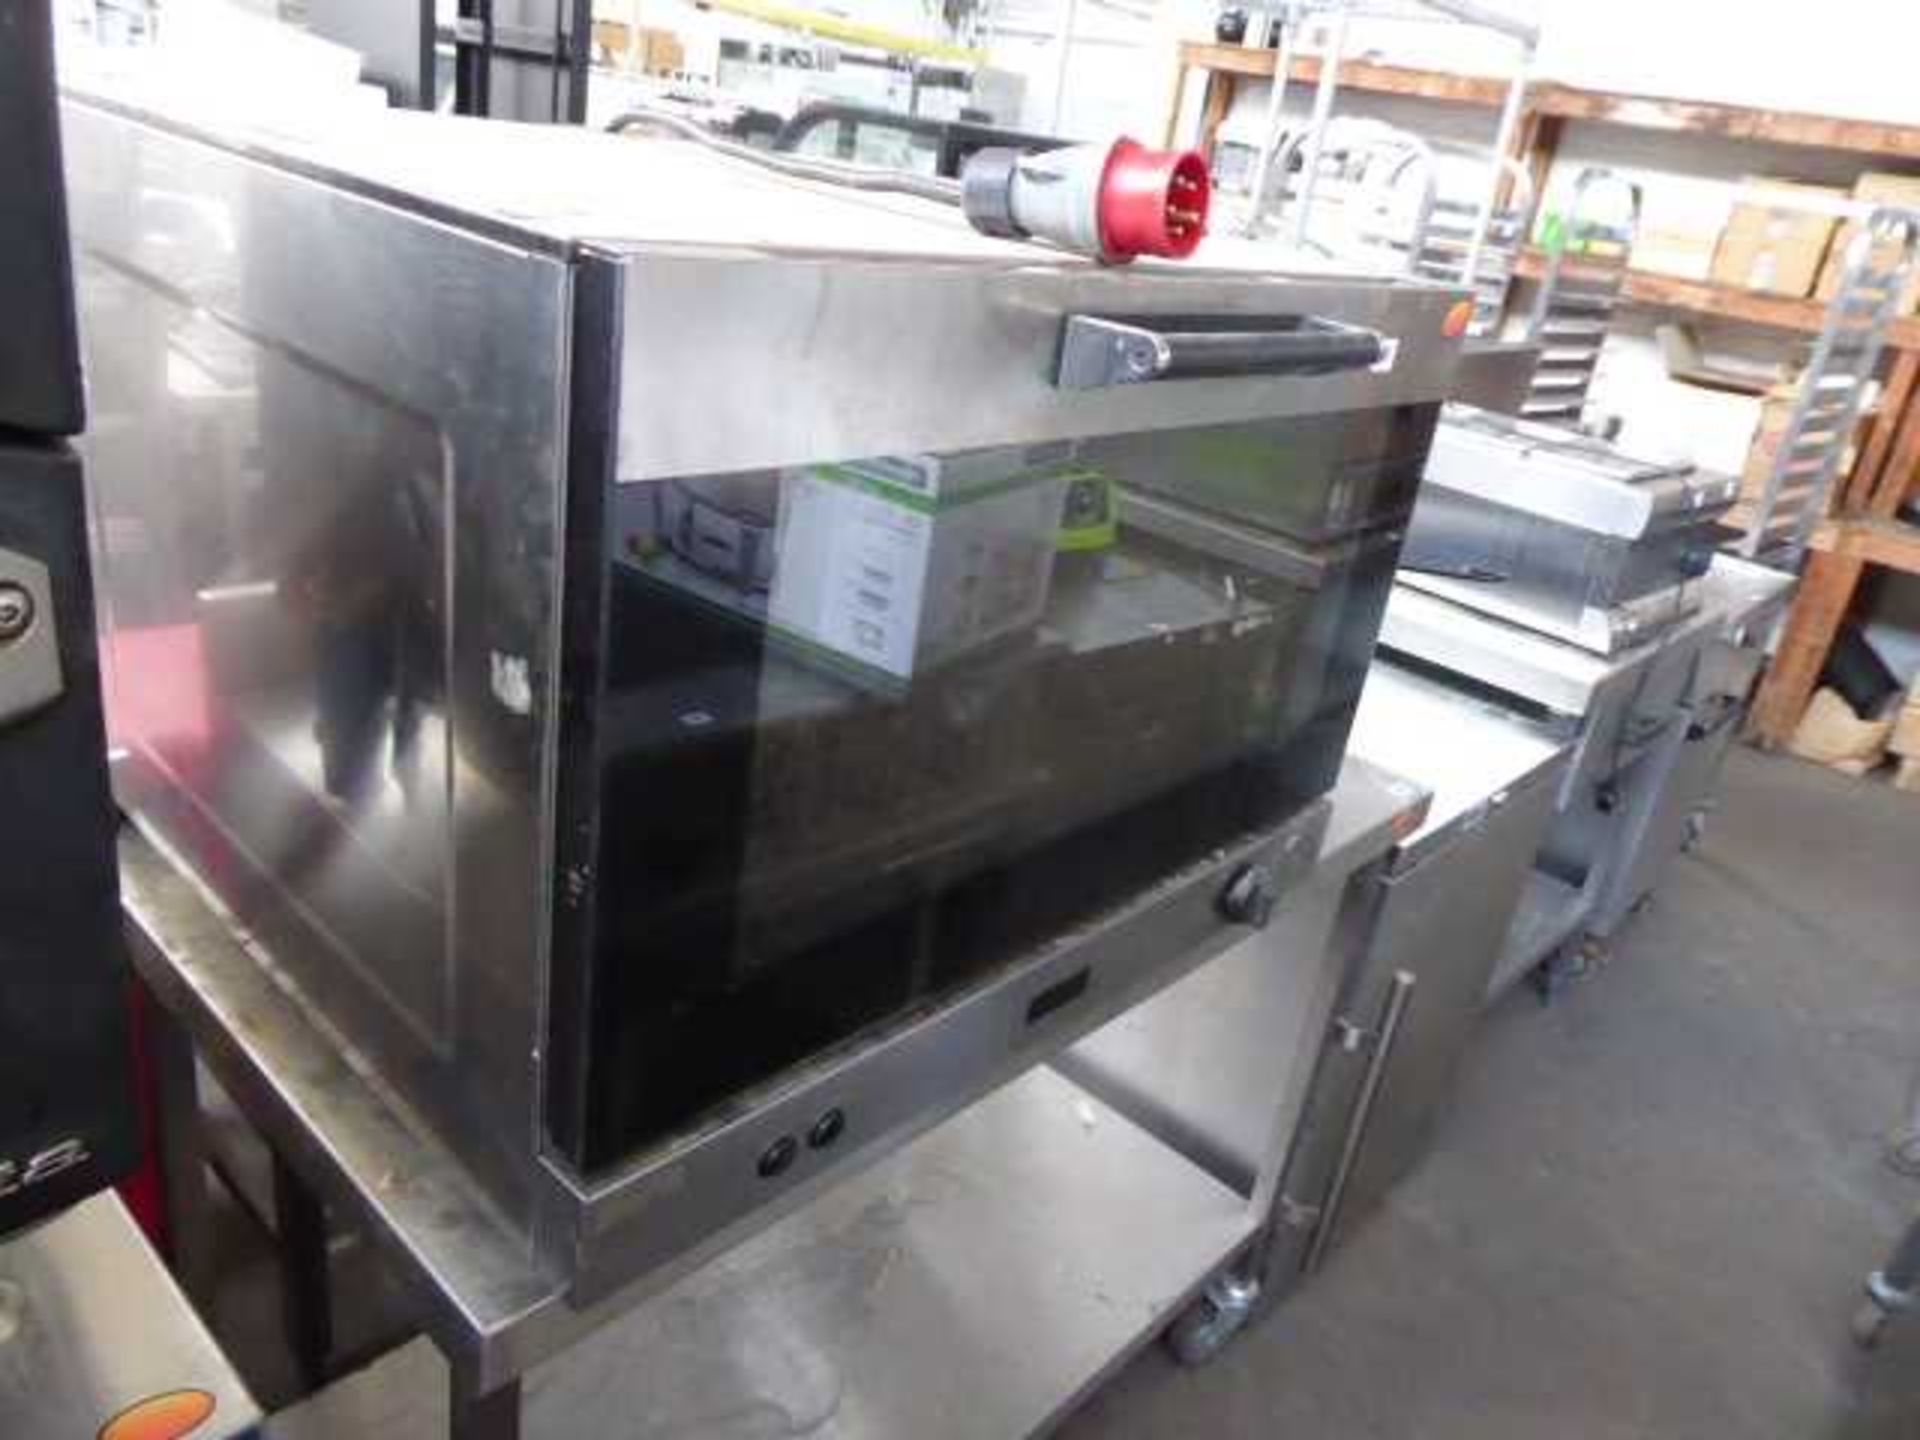 78cm electric Smeg bench top oven